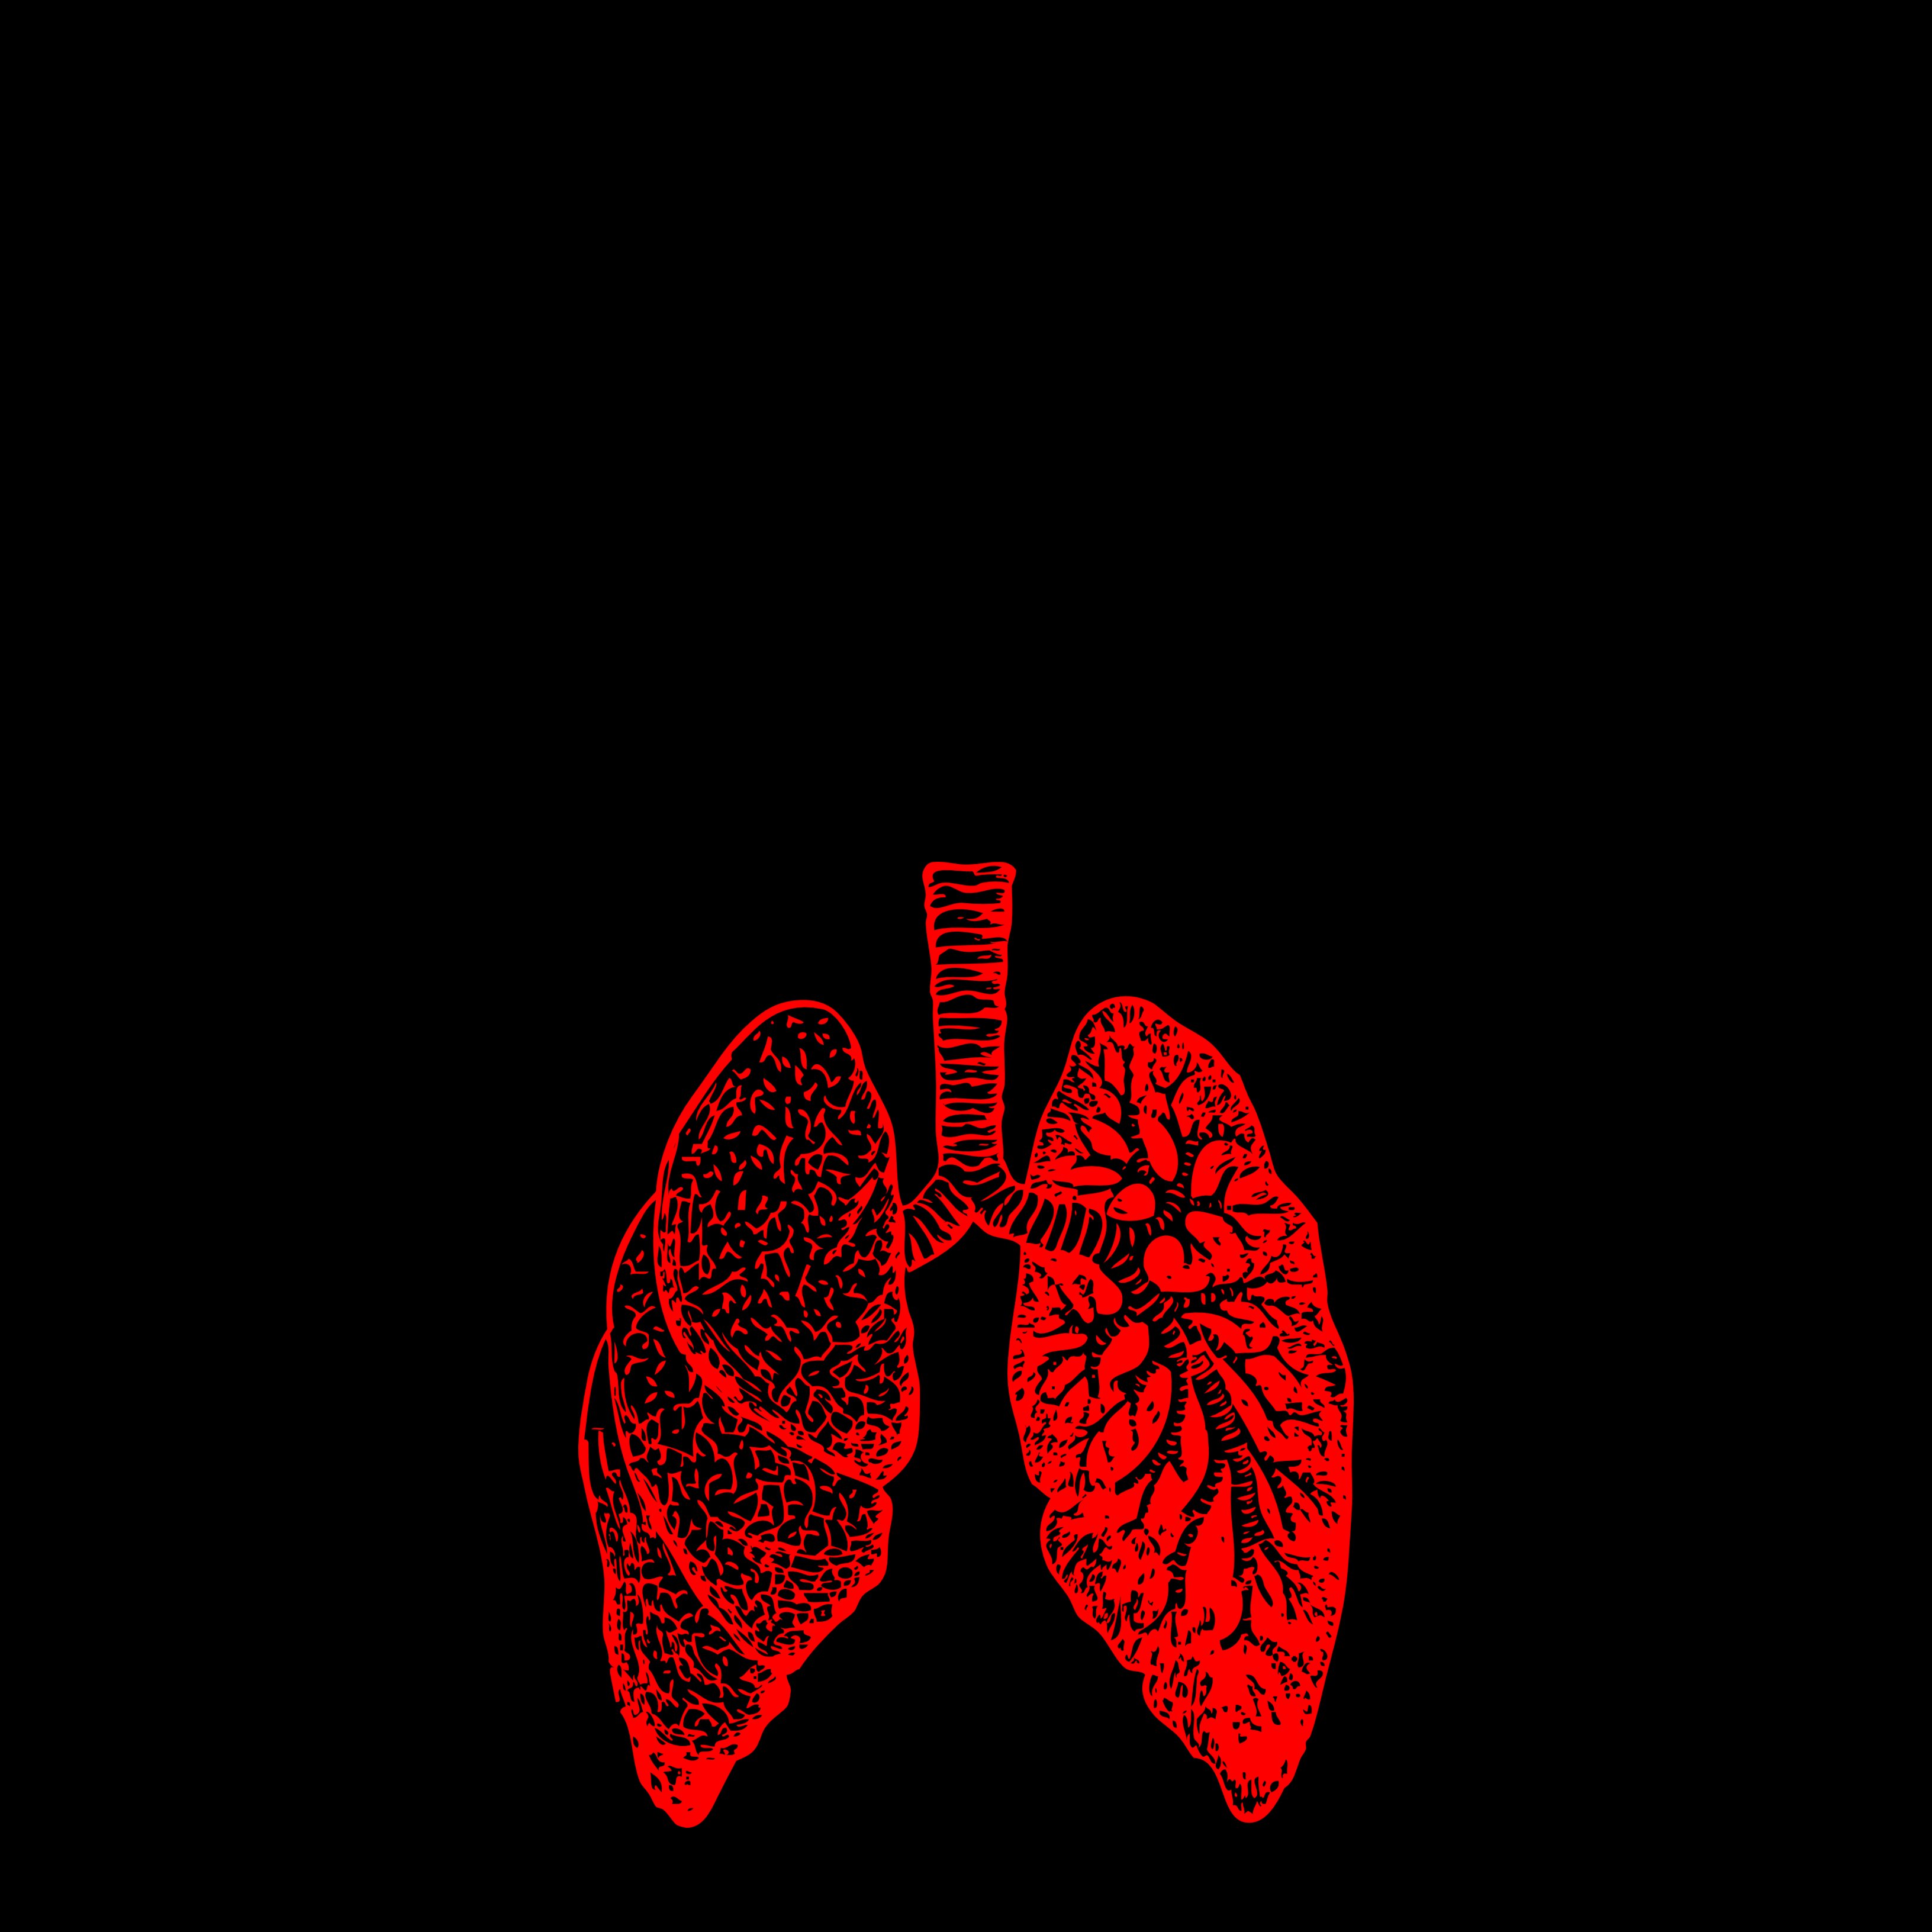 El cáncer de pulmón y bronquios, el más mortal en 2020